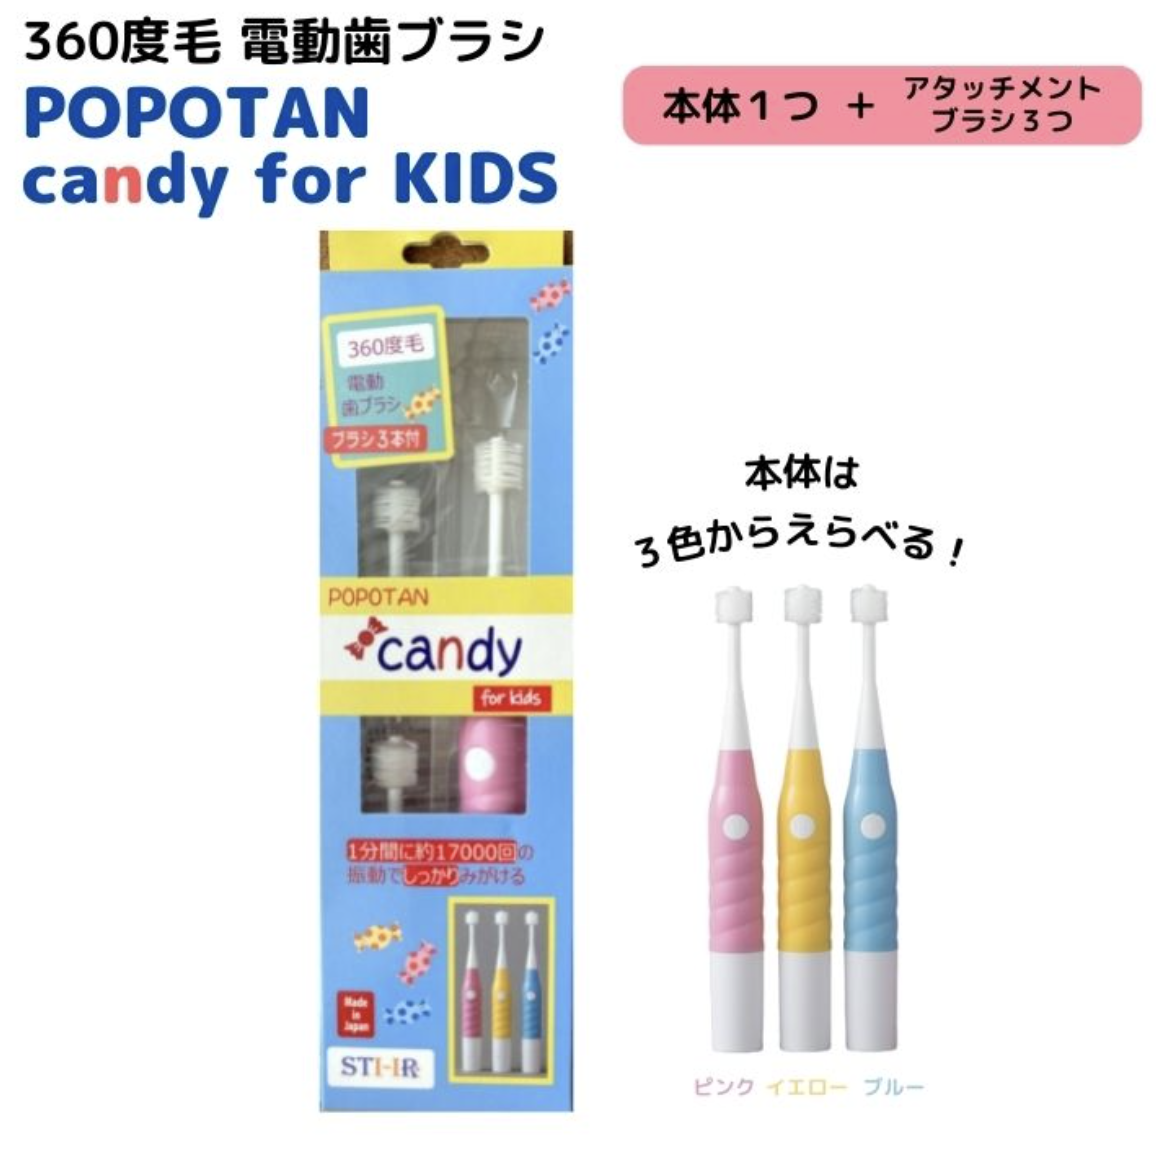 360度毛 電動歯ブラシ POPOTAN candy for KIDS